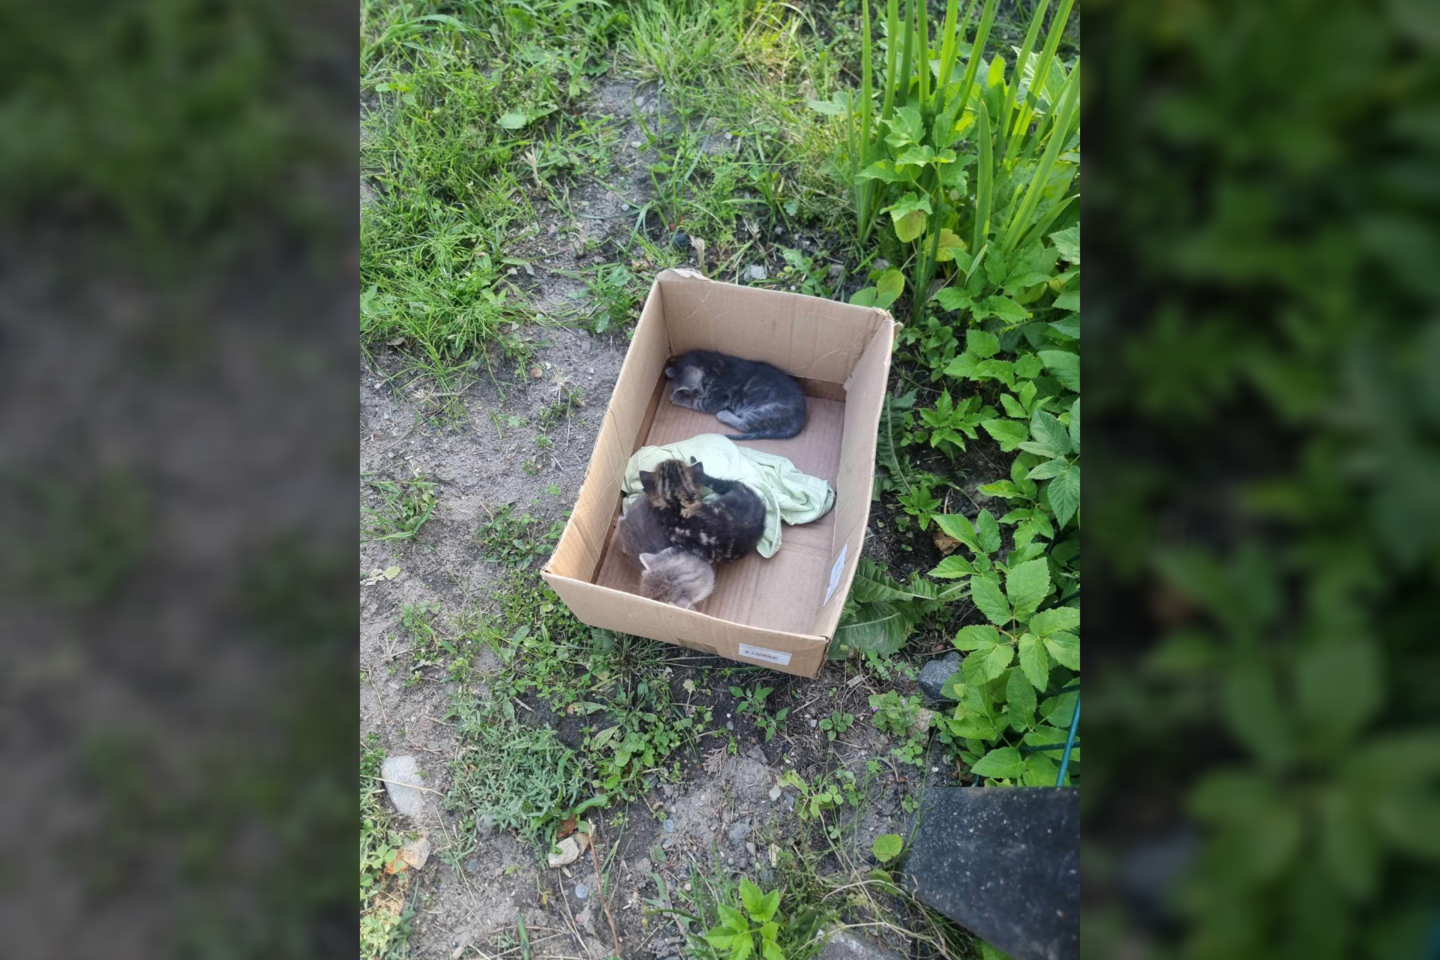 Du iš trijų kačiukų neišgyveno: kas kaltas dėl žuvusių kačiukų?<br> GGI nuotr.